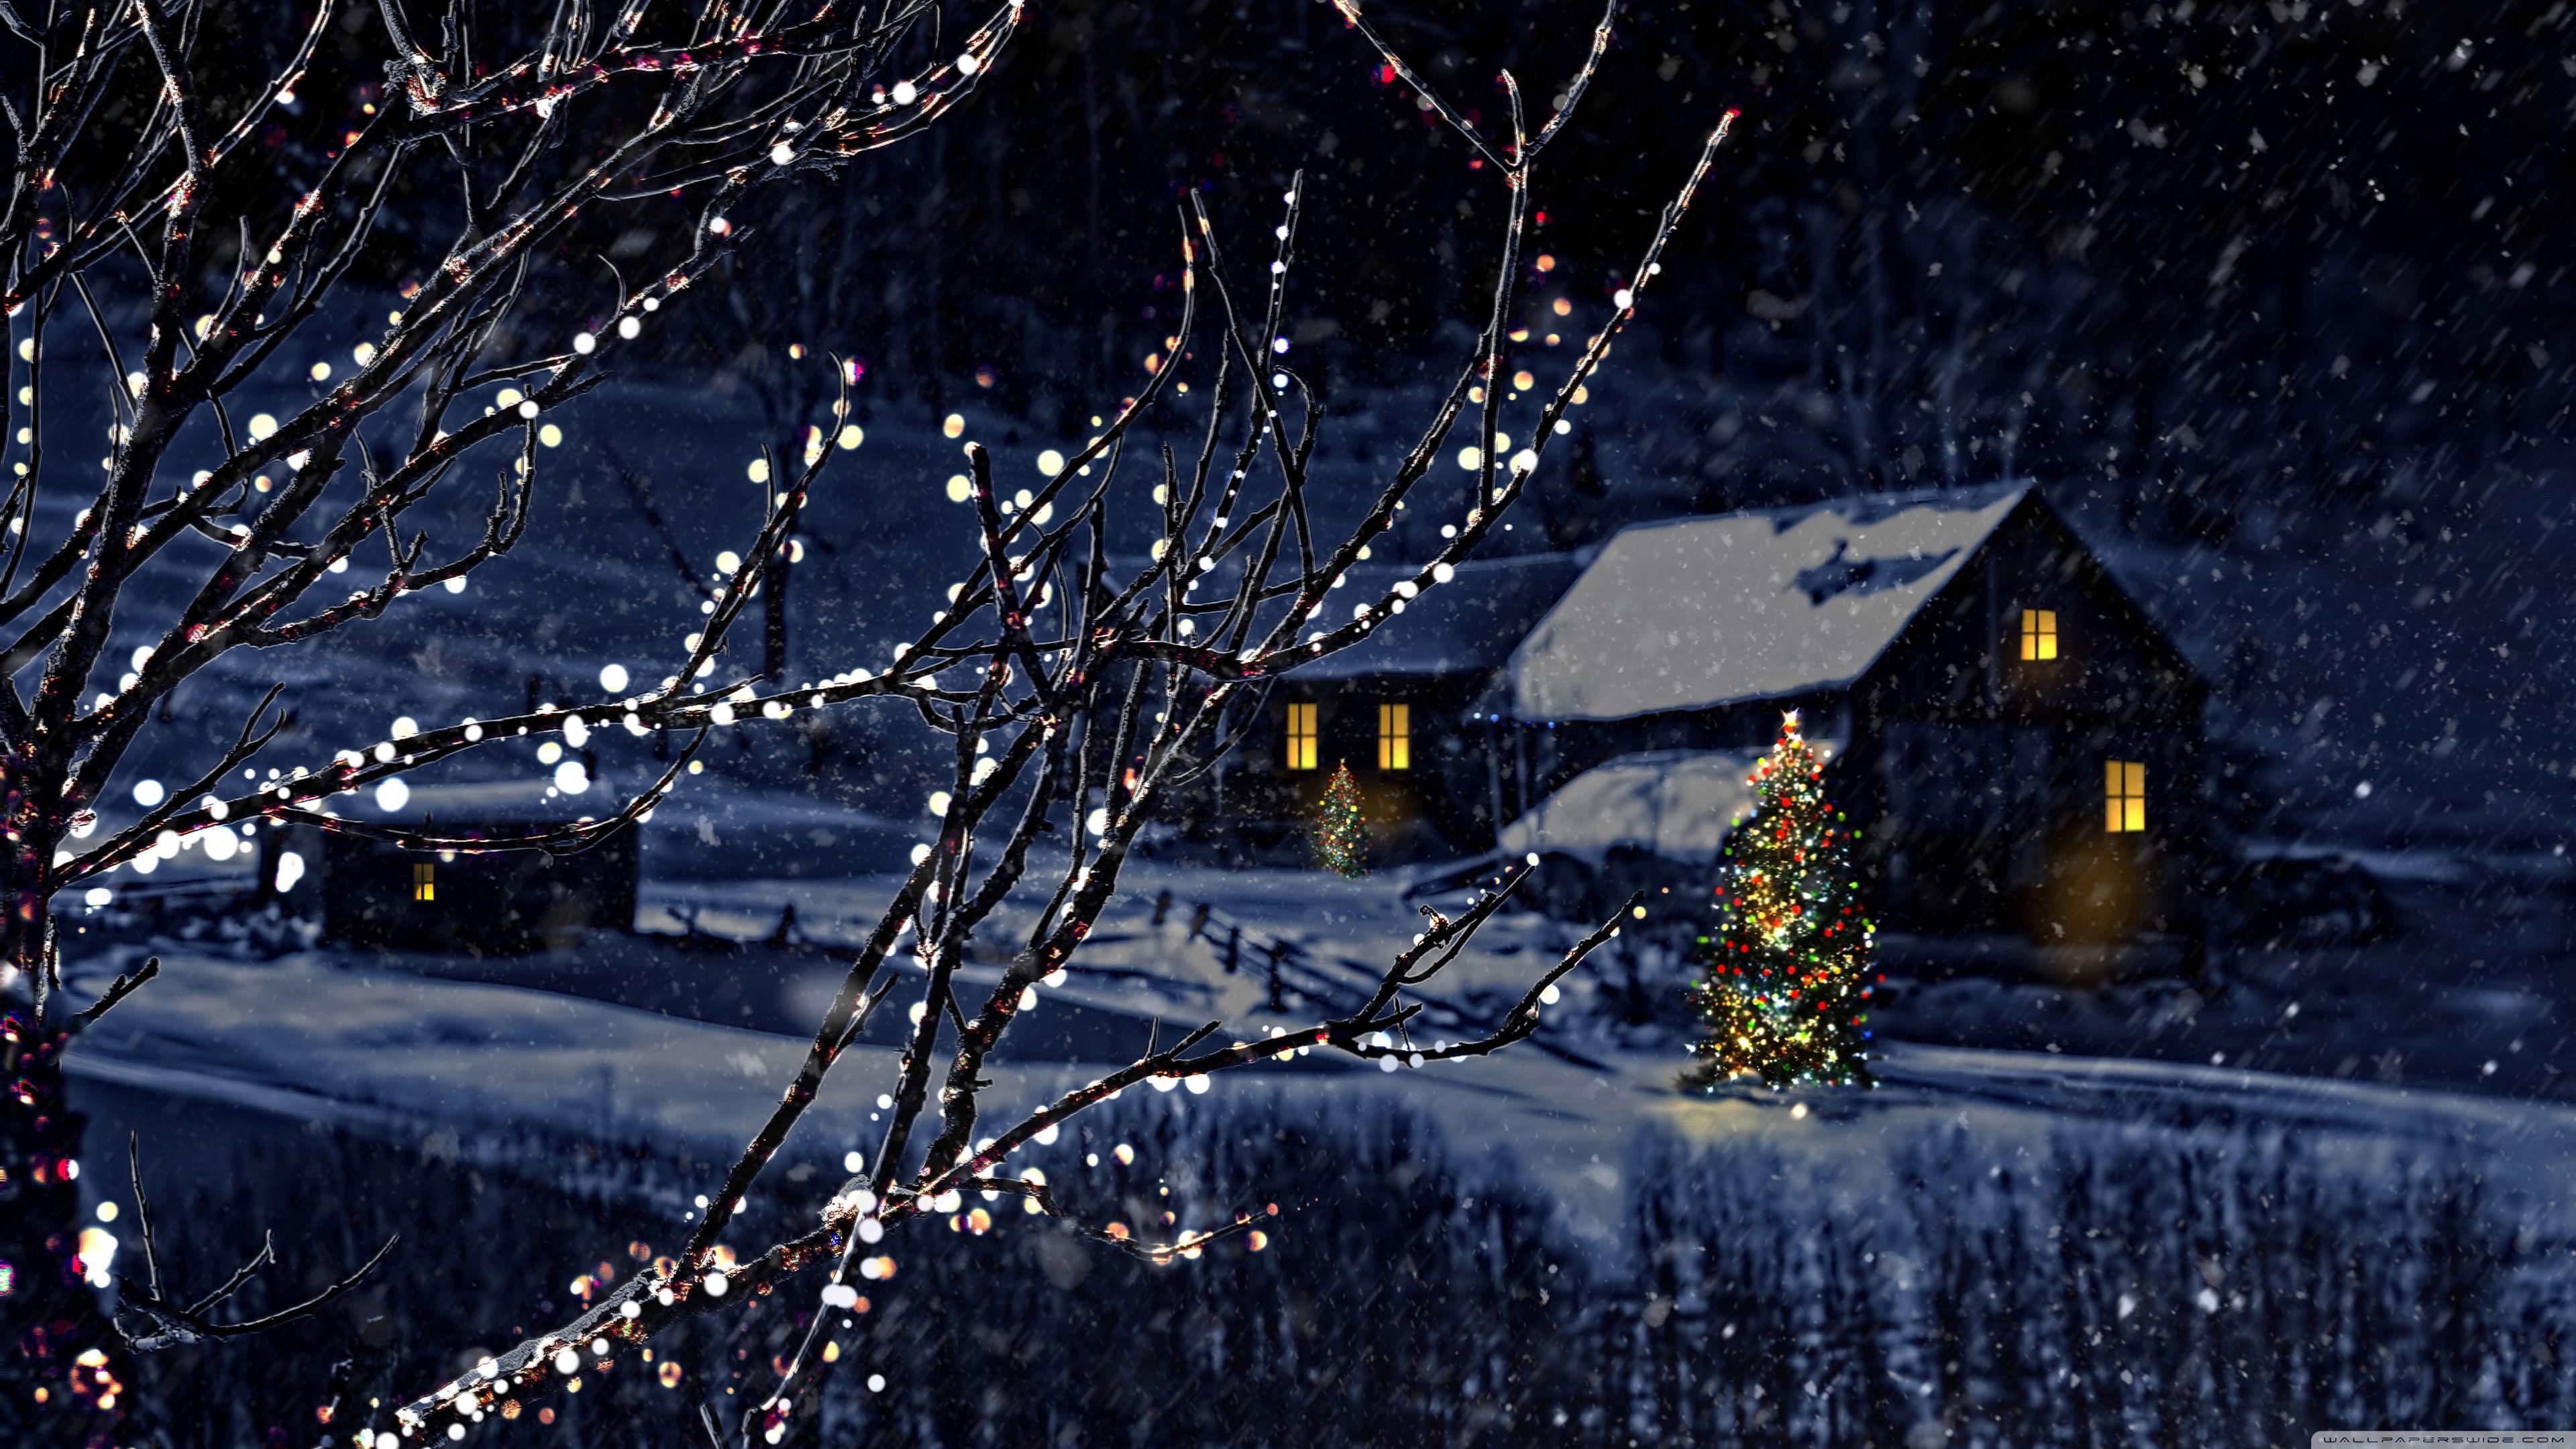 Chào đón mùa lễ hội Giáng sinh với những hình ảnh nền tuyệt đẹp miễn phí cho màn hình máy tính của bạn. Điểm ảnh lễ hội với chất lượng hình ảnh 3840x2160 sắc nét, màu sắc tươi sáng sẽ mang lại cho bạn những trải nghiệm hấp dẫn và đầy màu sắc.